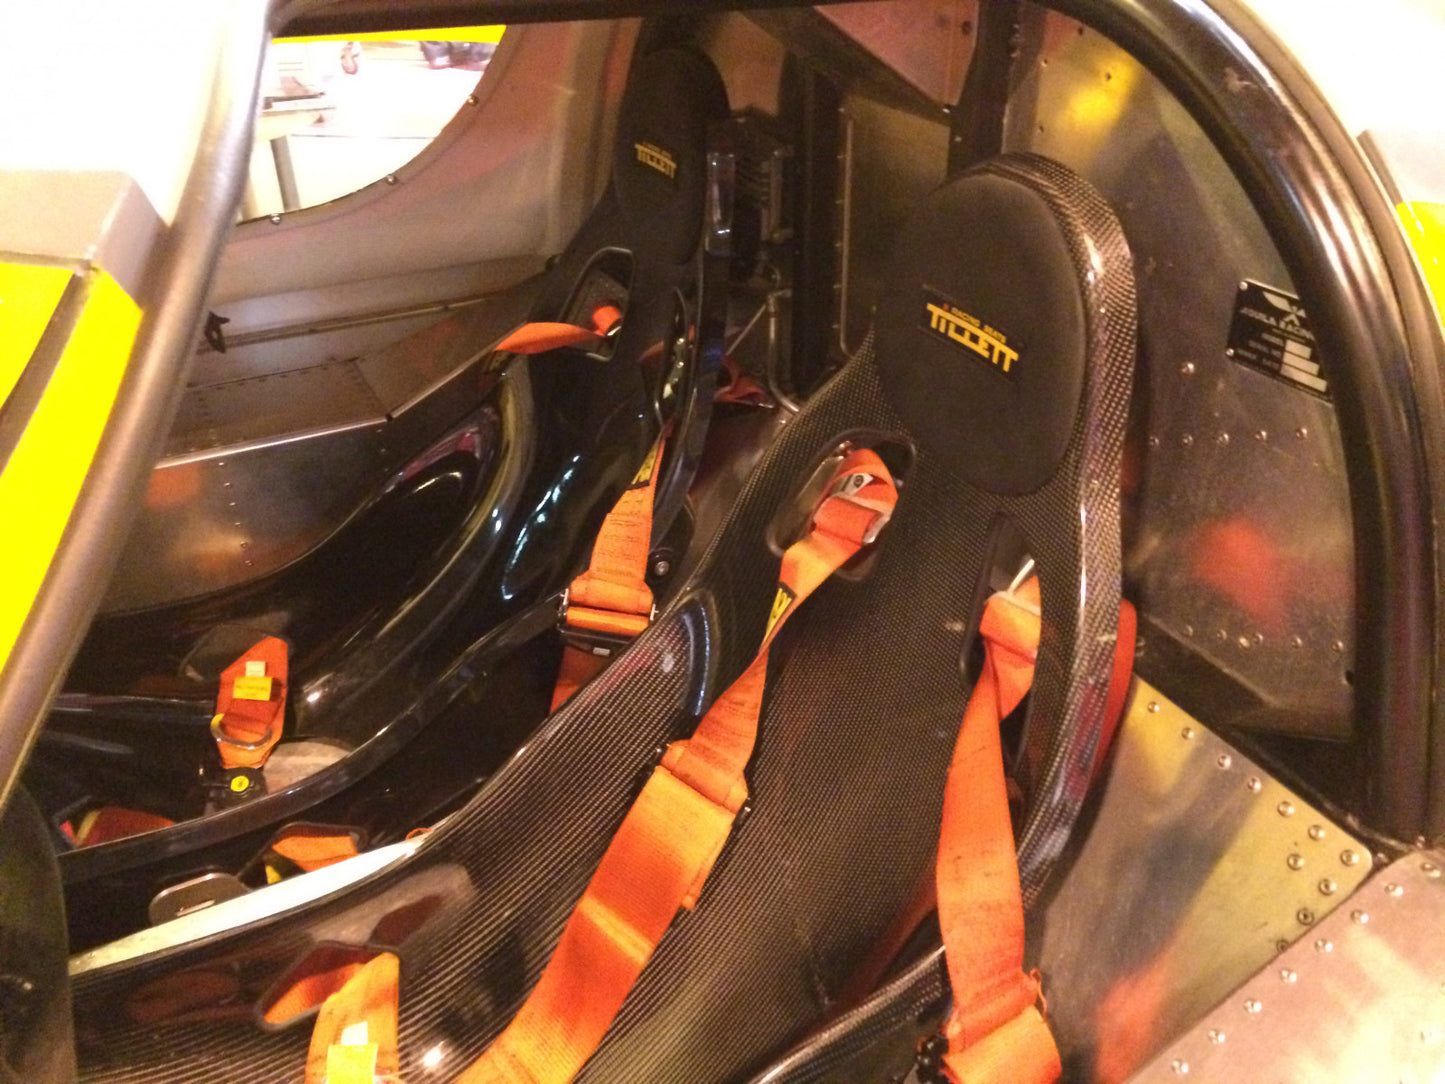 Tillett B4 Carbon/GRP Race Car Seat - Slight Second Open Box TIL-B4-C-SS2